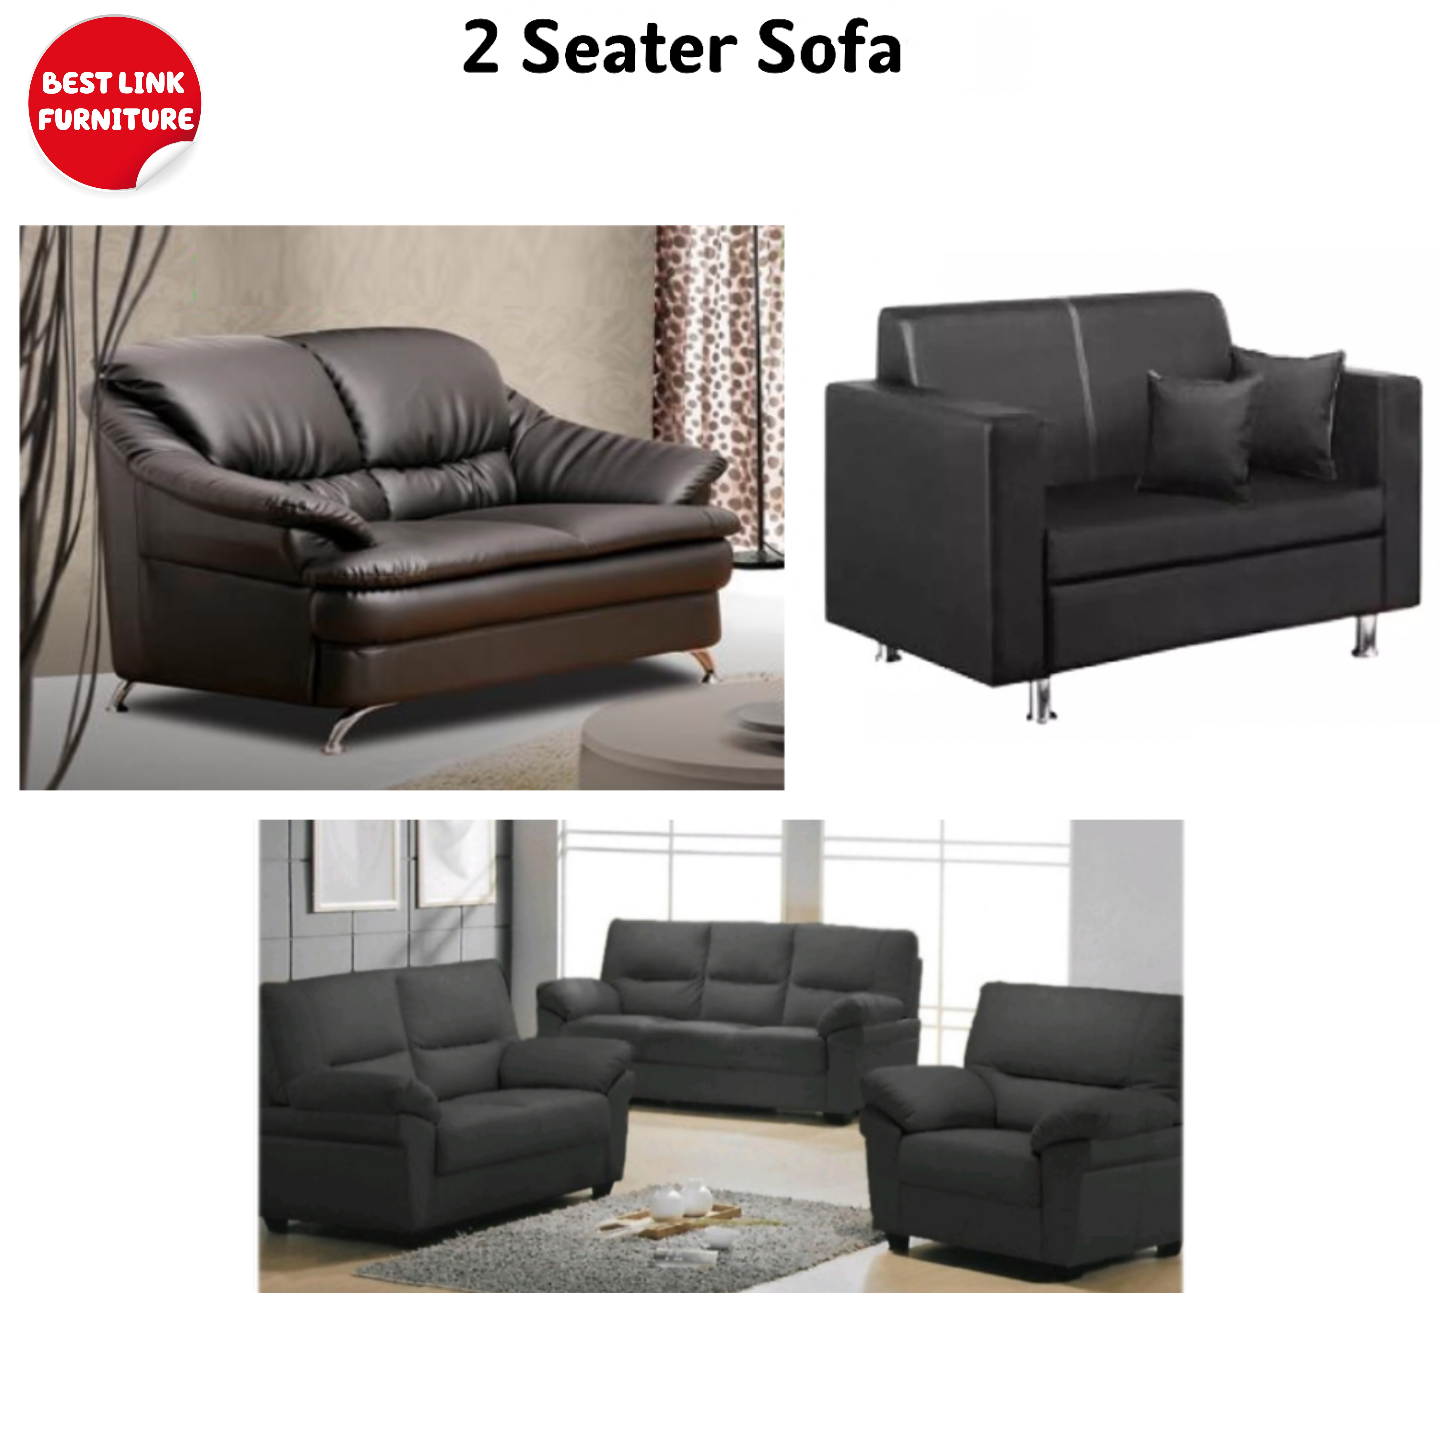 Best Link Furniture Sofa Set 3 2